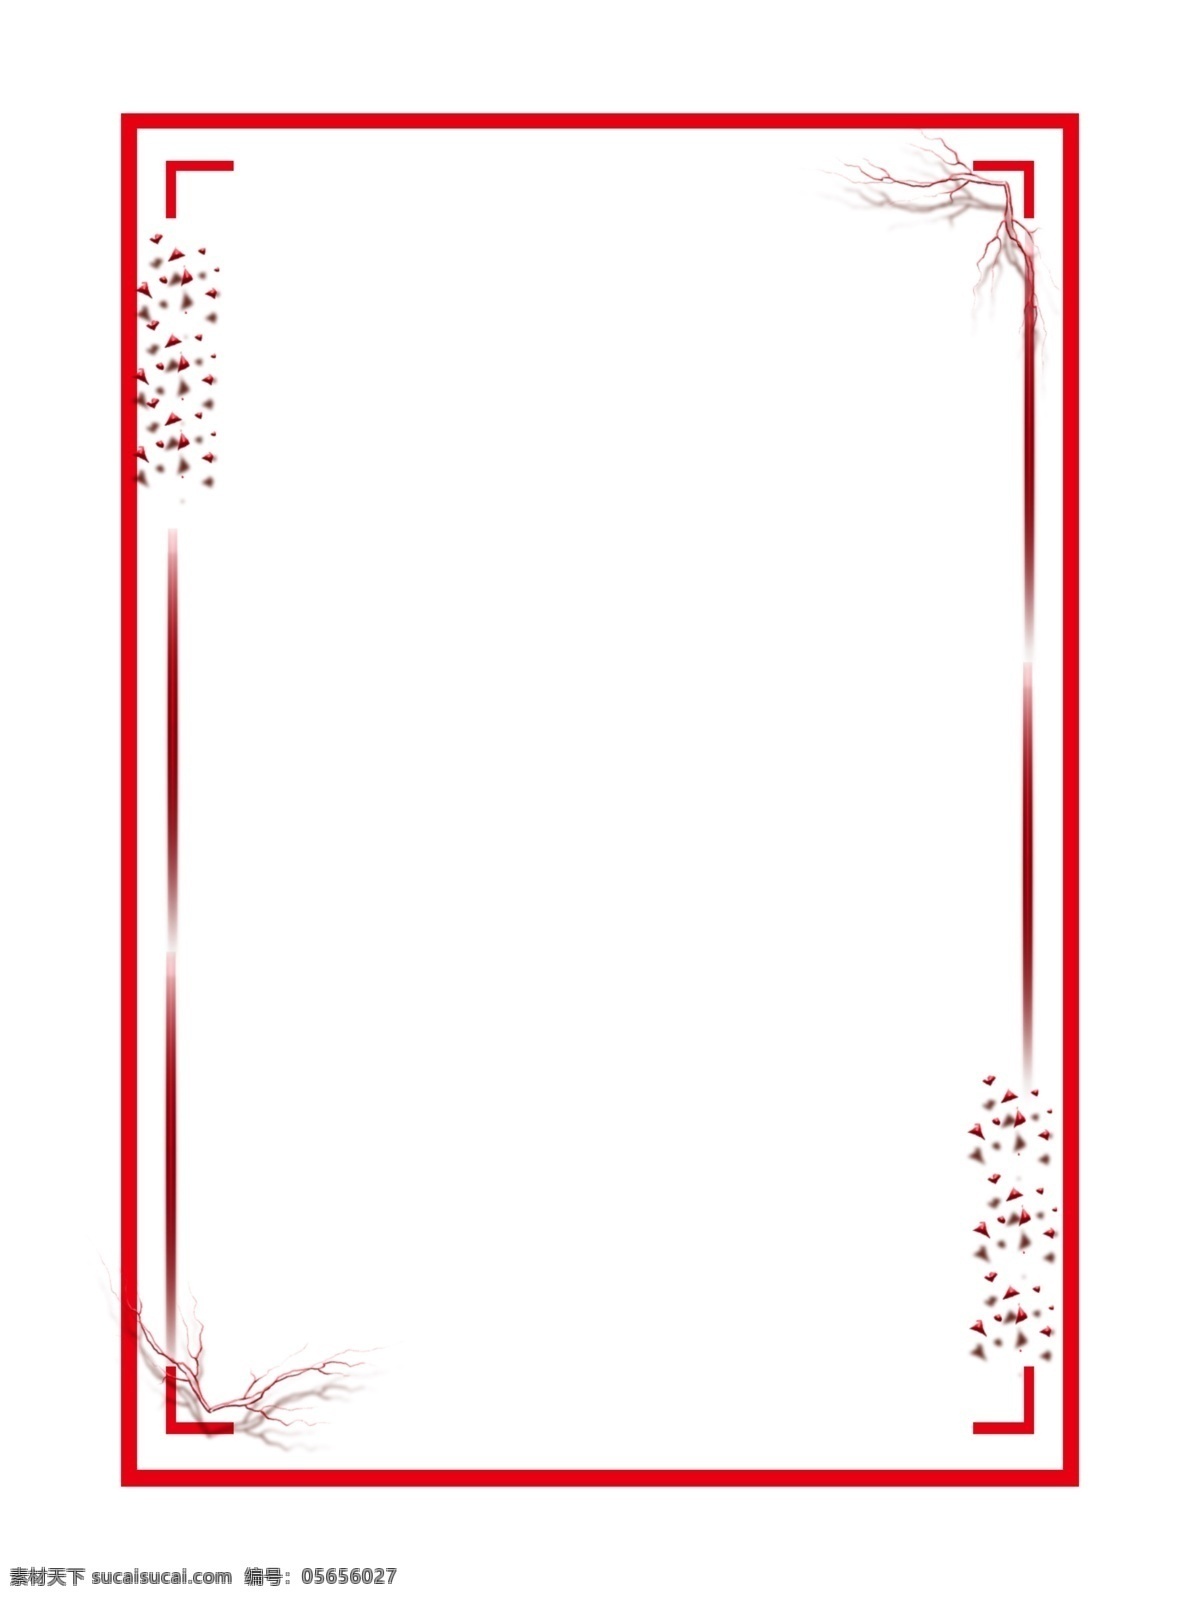 新年 红色 边框 手绘 简约 喜庆边框 新年边框 春节边框 边框设计 中国风 文本框 标题框 古典 底纹